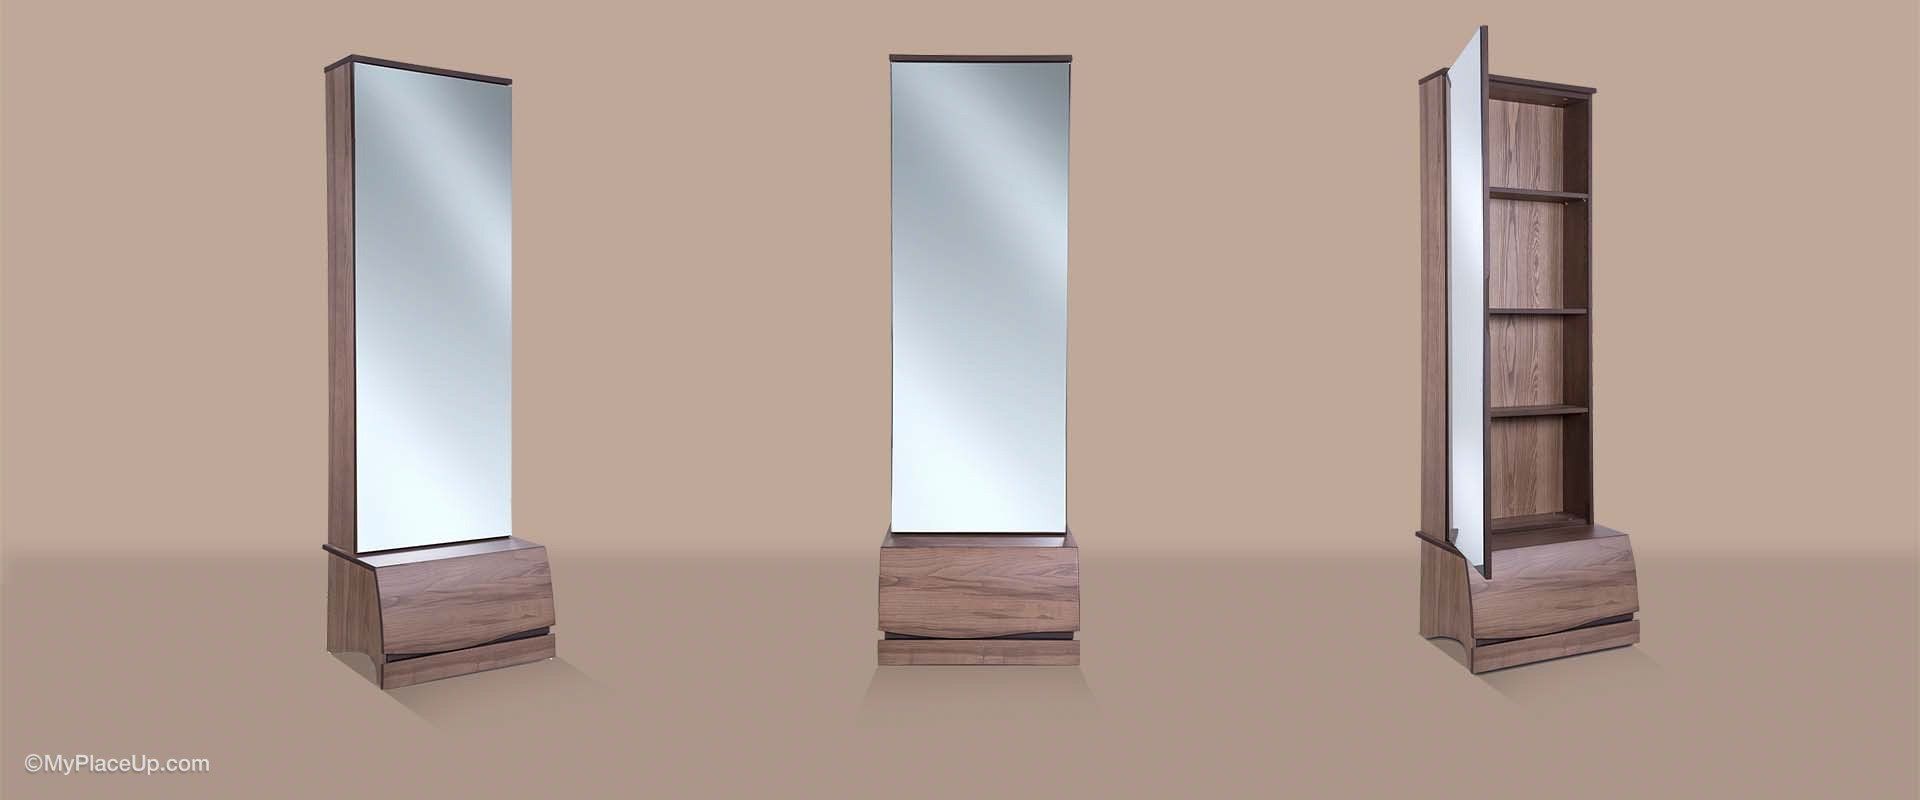 Ηλέκτρα Ελιά – Καθρέφτης με Αποθηκευτικό Χώρο